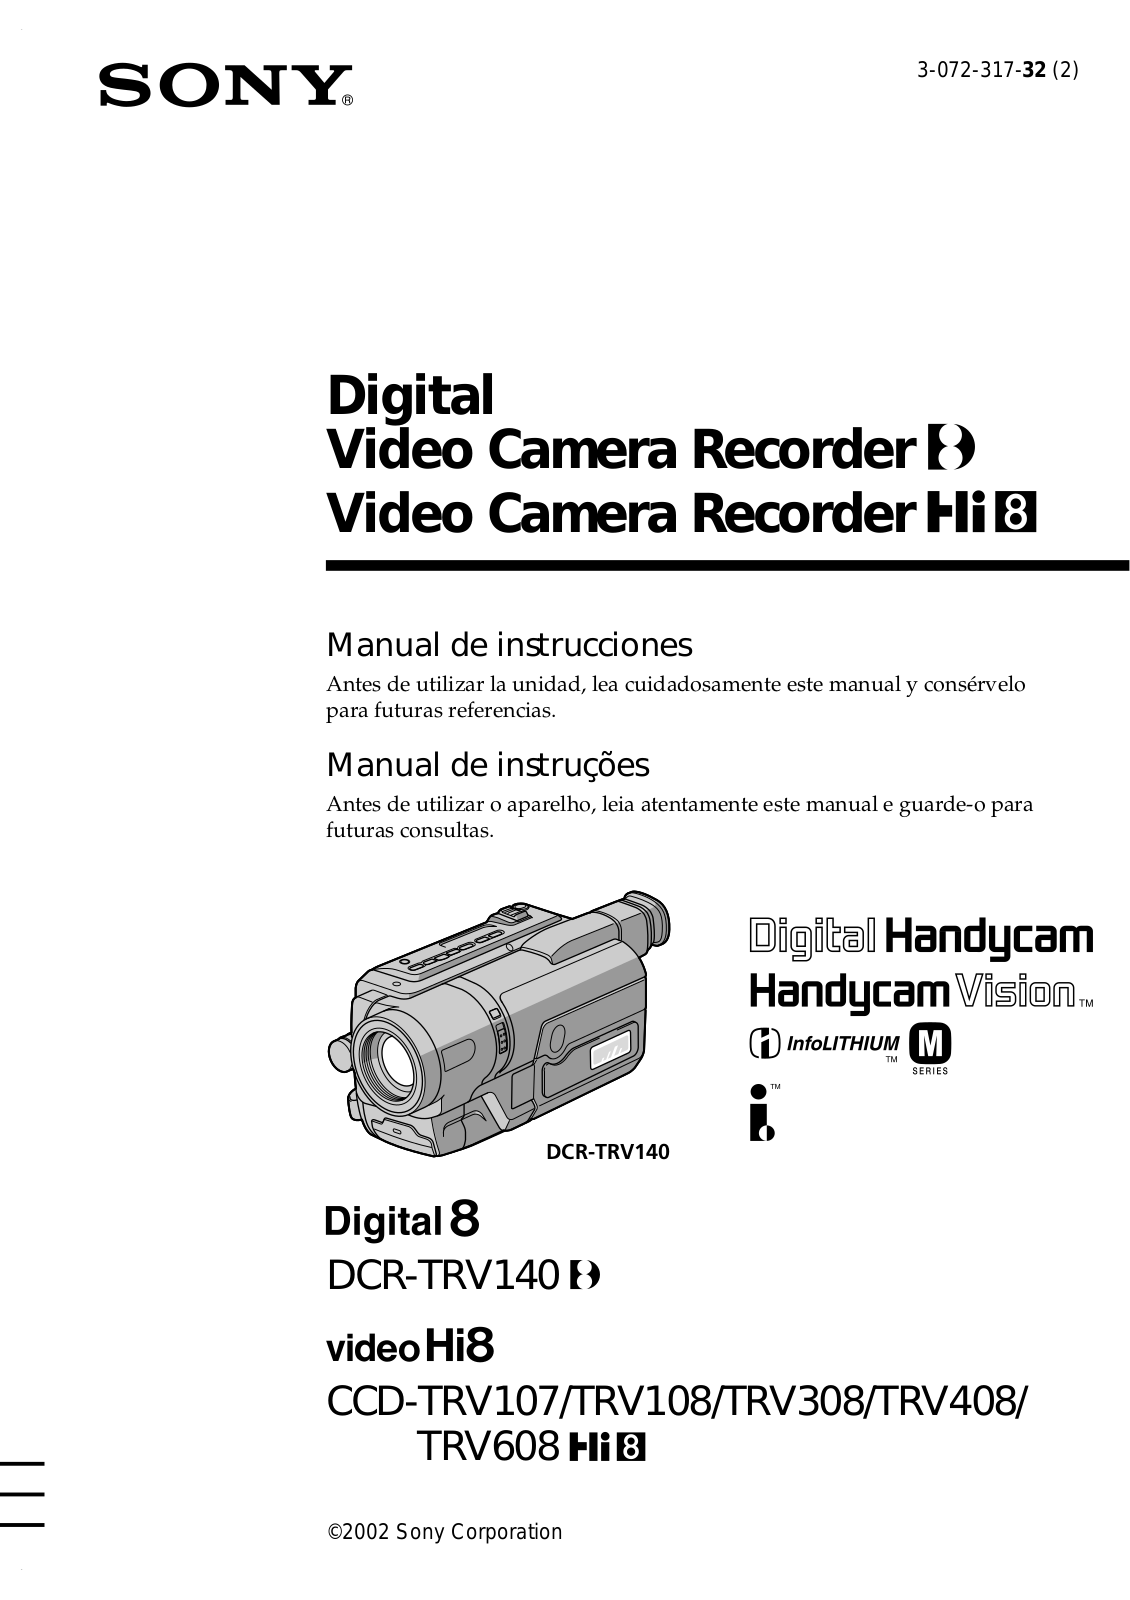 Sony DCRTRV140, CCDTRV608, CCDTRV408, CCDTRV308, CCDTRV108 User Manual